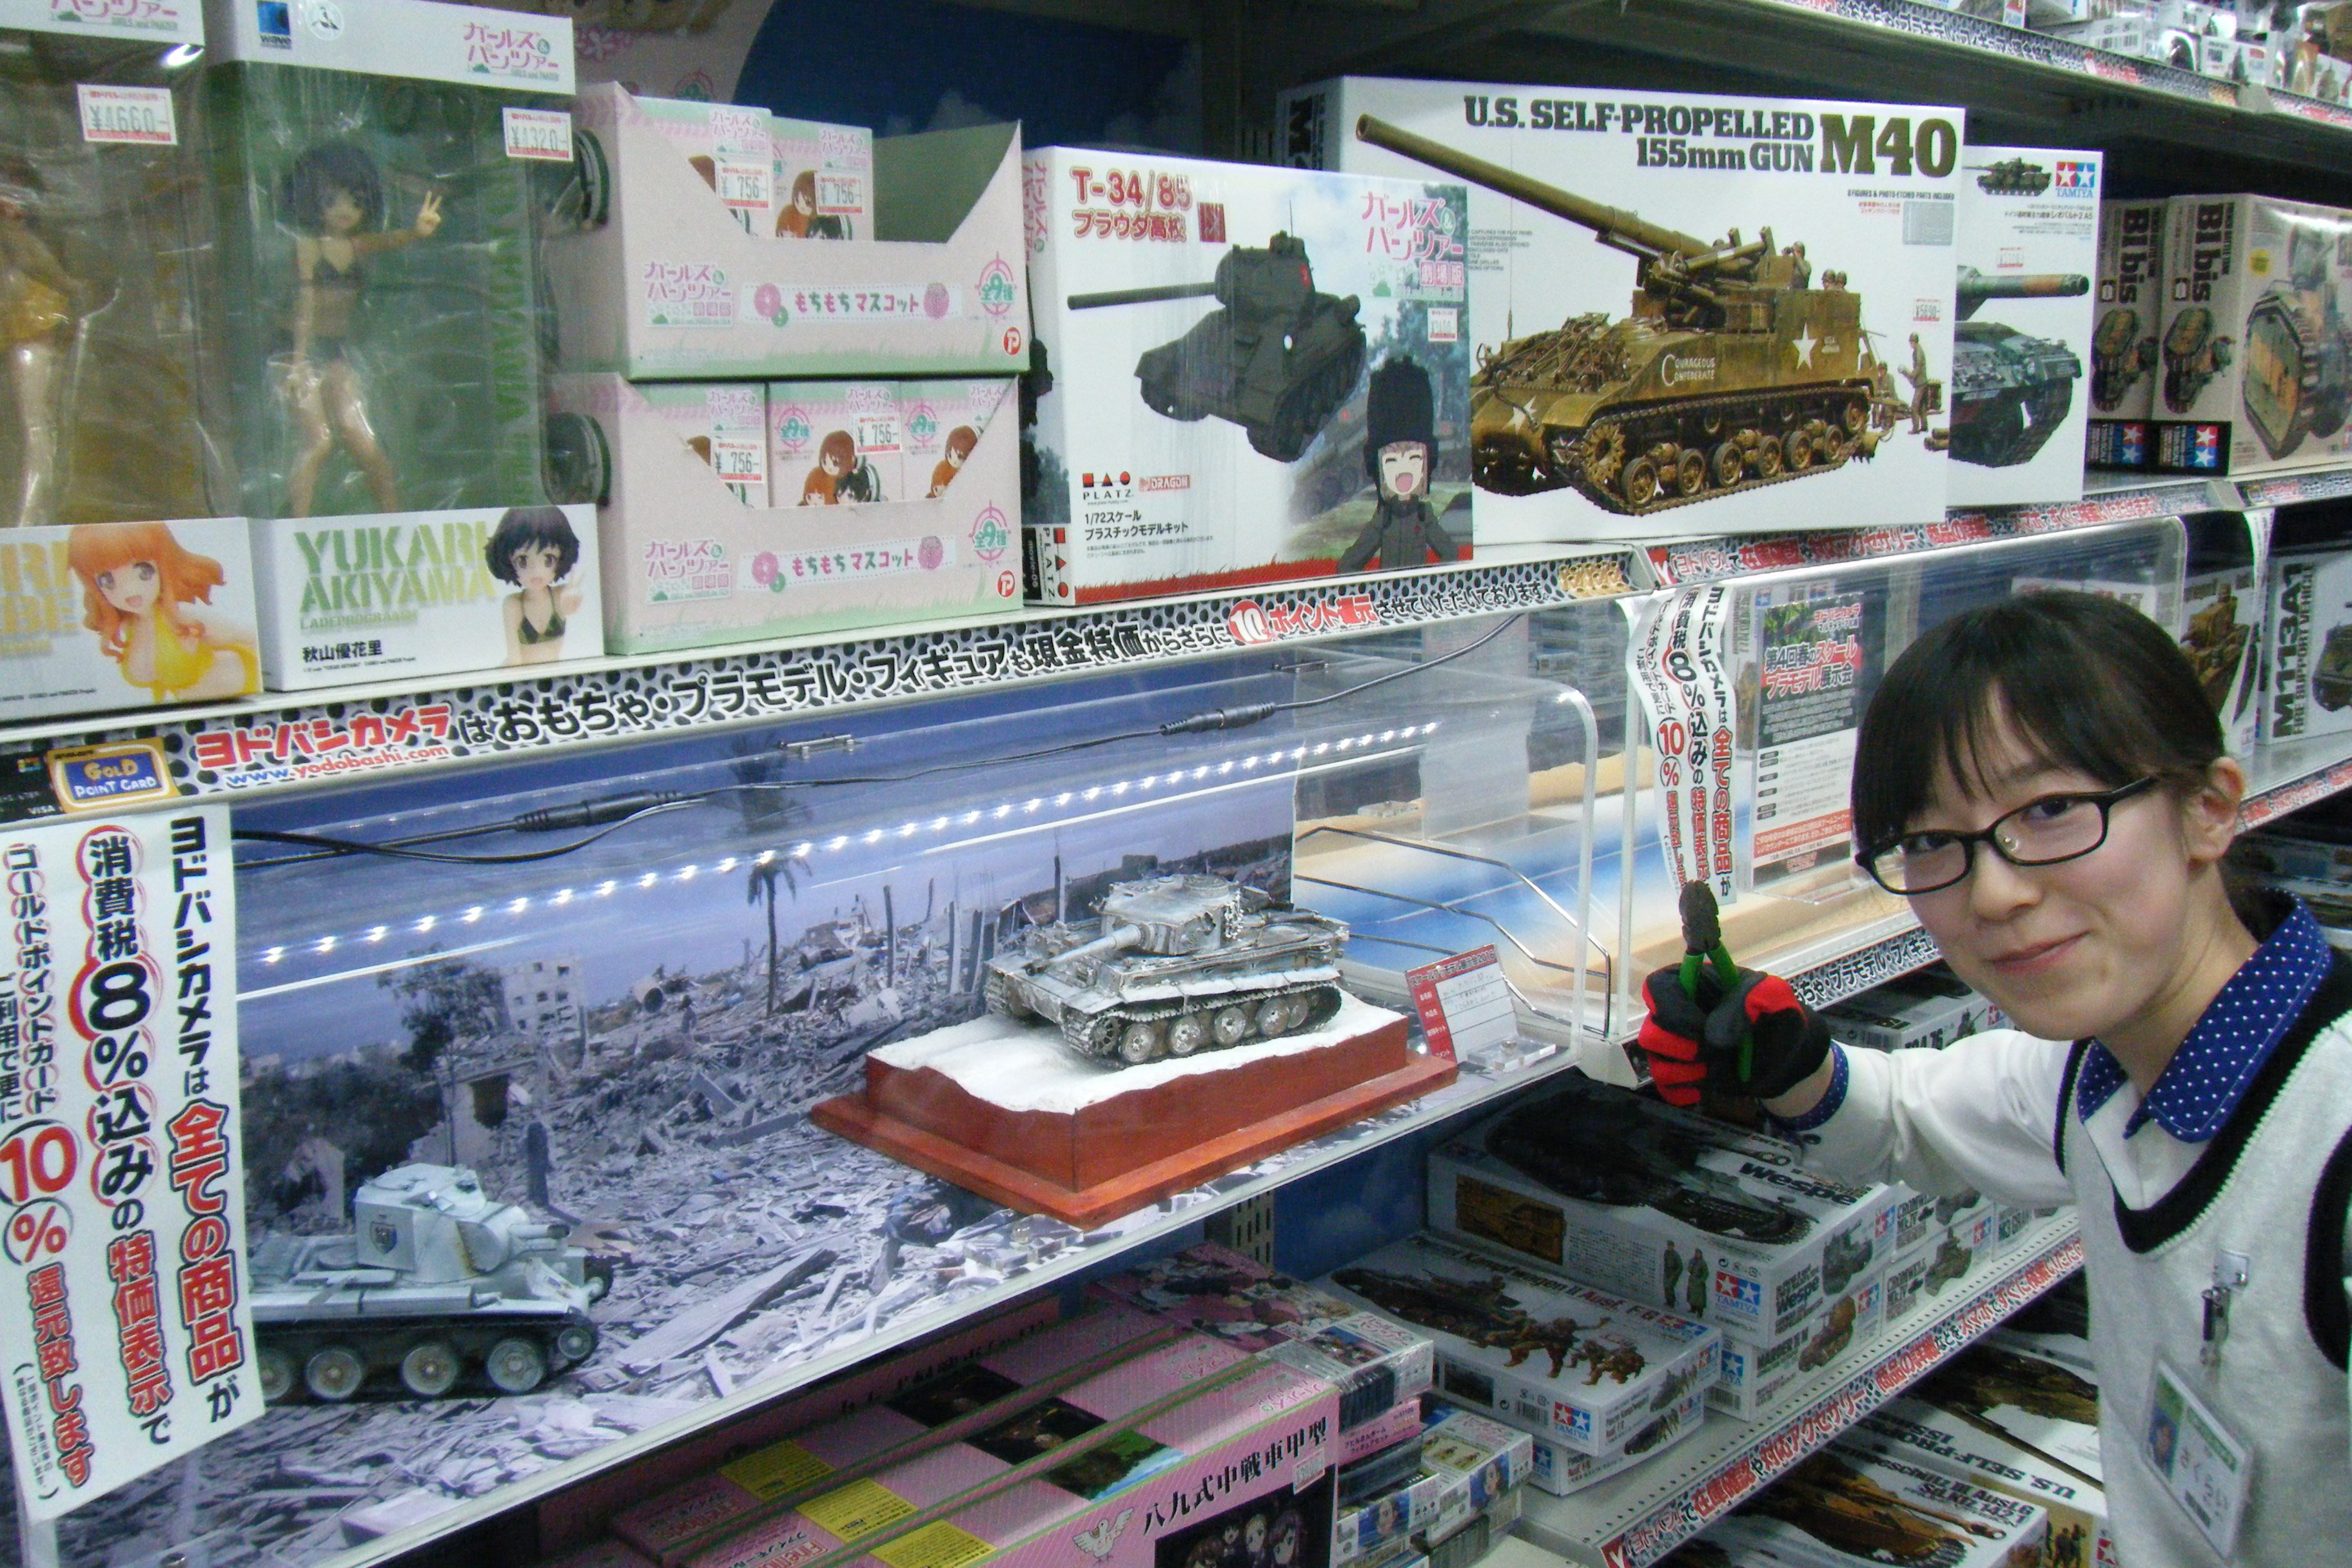 ヨドバシカメラ 公式 店舗情報 札幌 お客様のプラモデルを 札幌ヨドバシに展示しませんか 札幌店では 春のスケール プラモデル展示会 を開催中 お客様にお持ち込みいただいた戦車や戦艦 車などのノンキャラクターモデルを展示しています